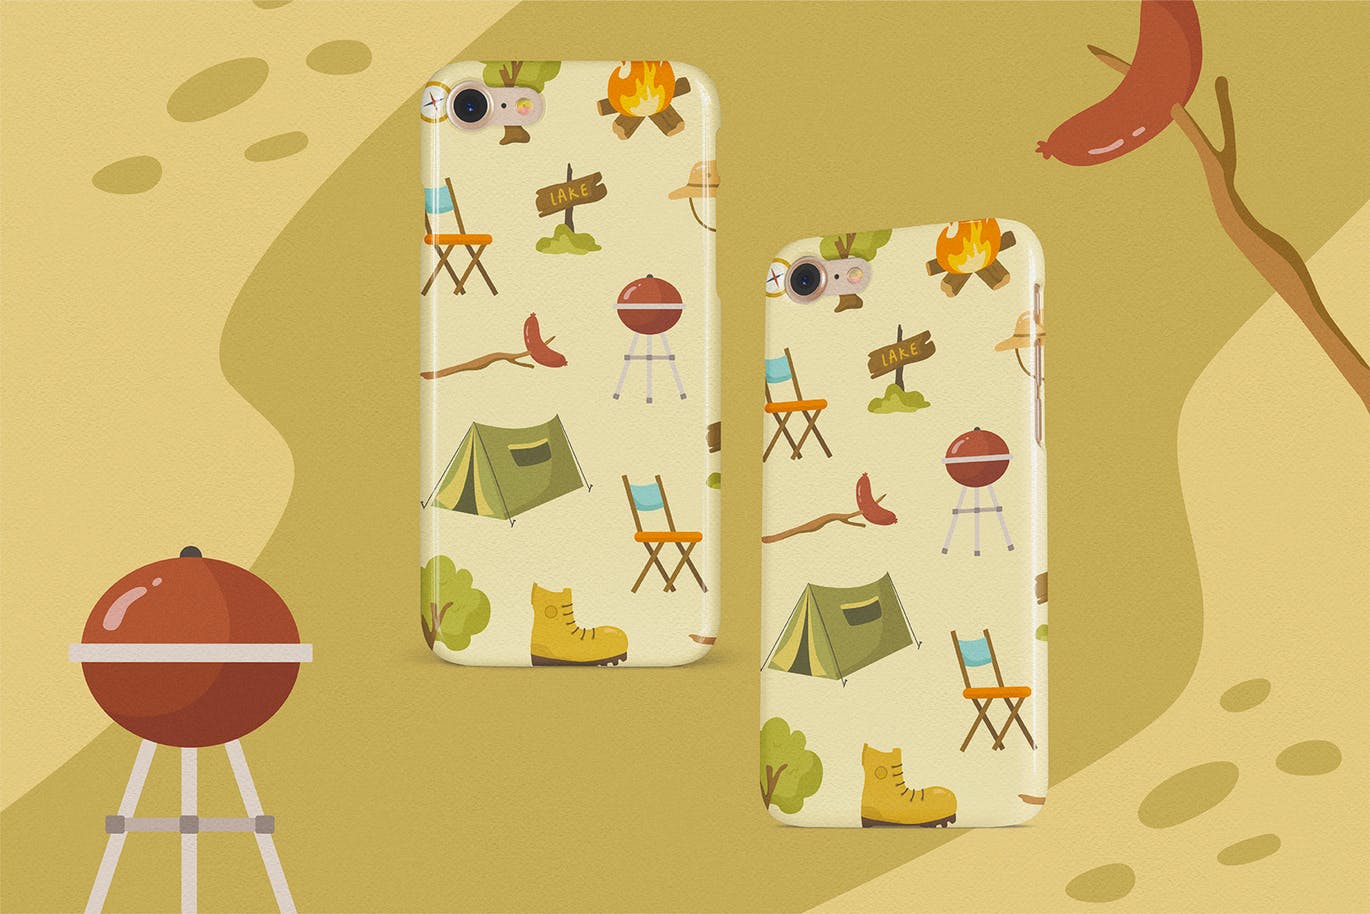 夏日营地主题矢量手绘剪贴画图案素材 Summer Camp Vector Clipart Pack插图(3)